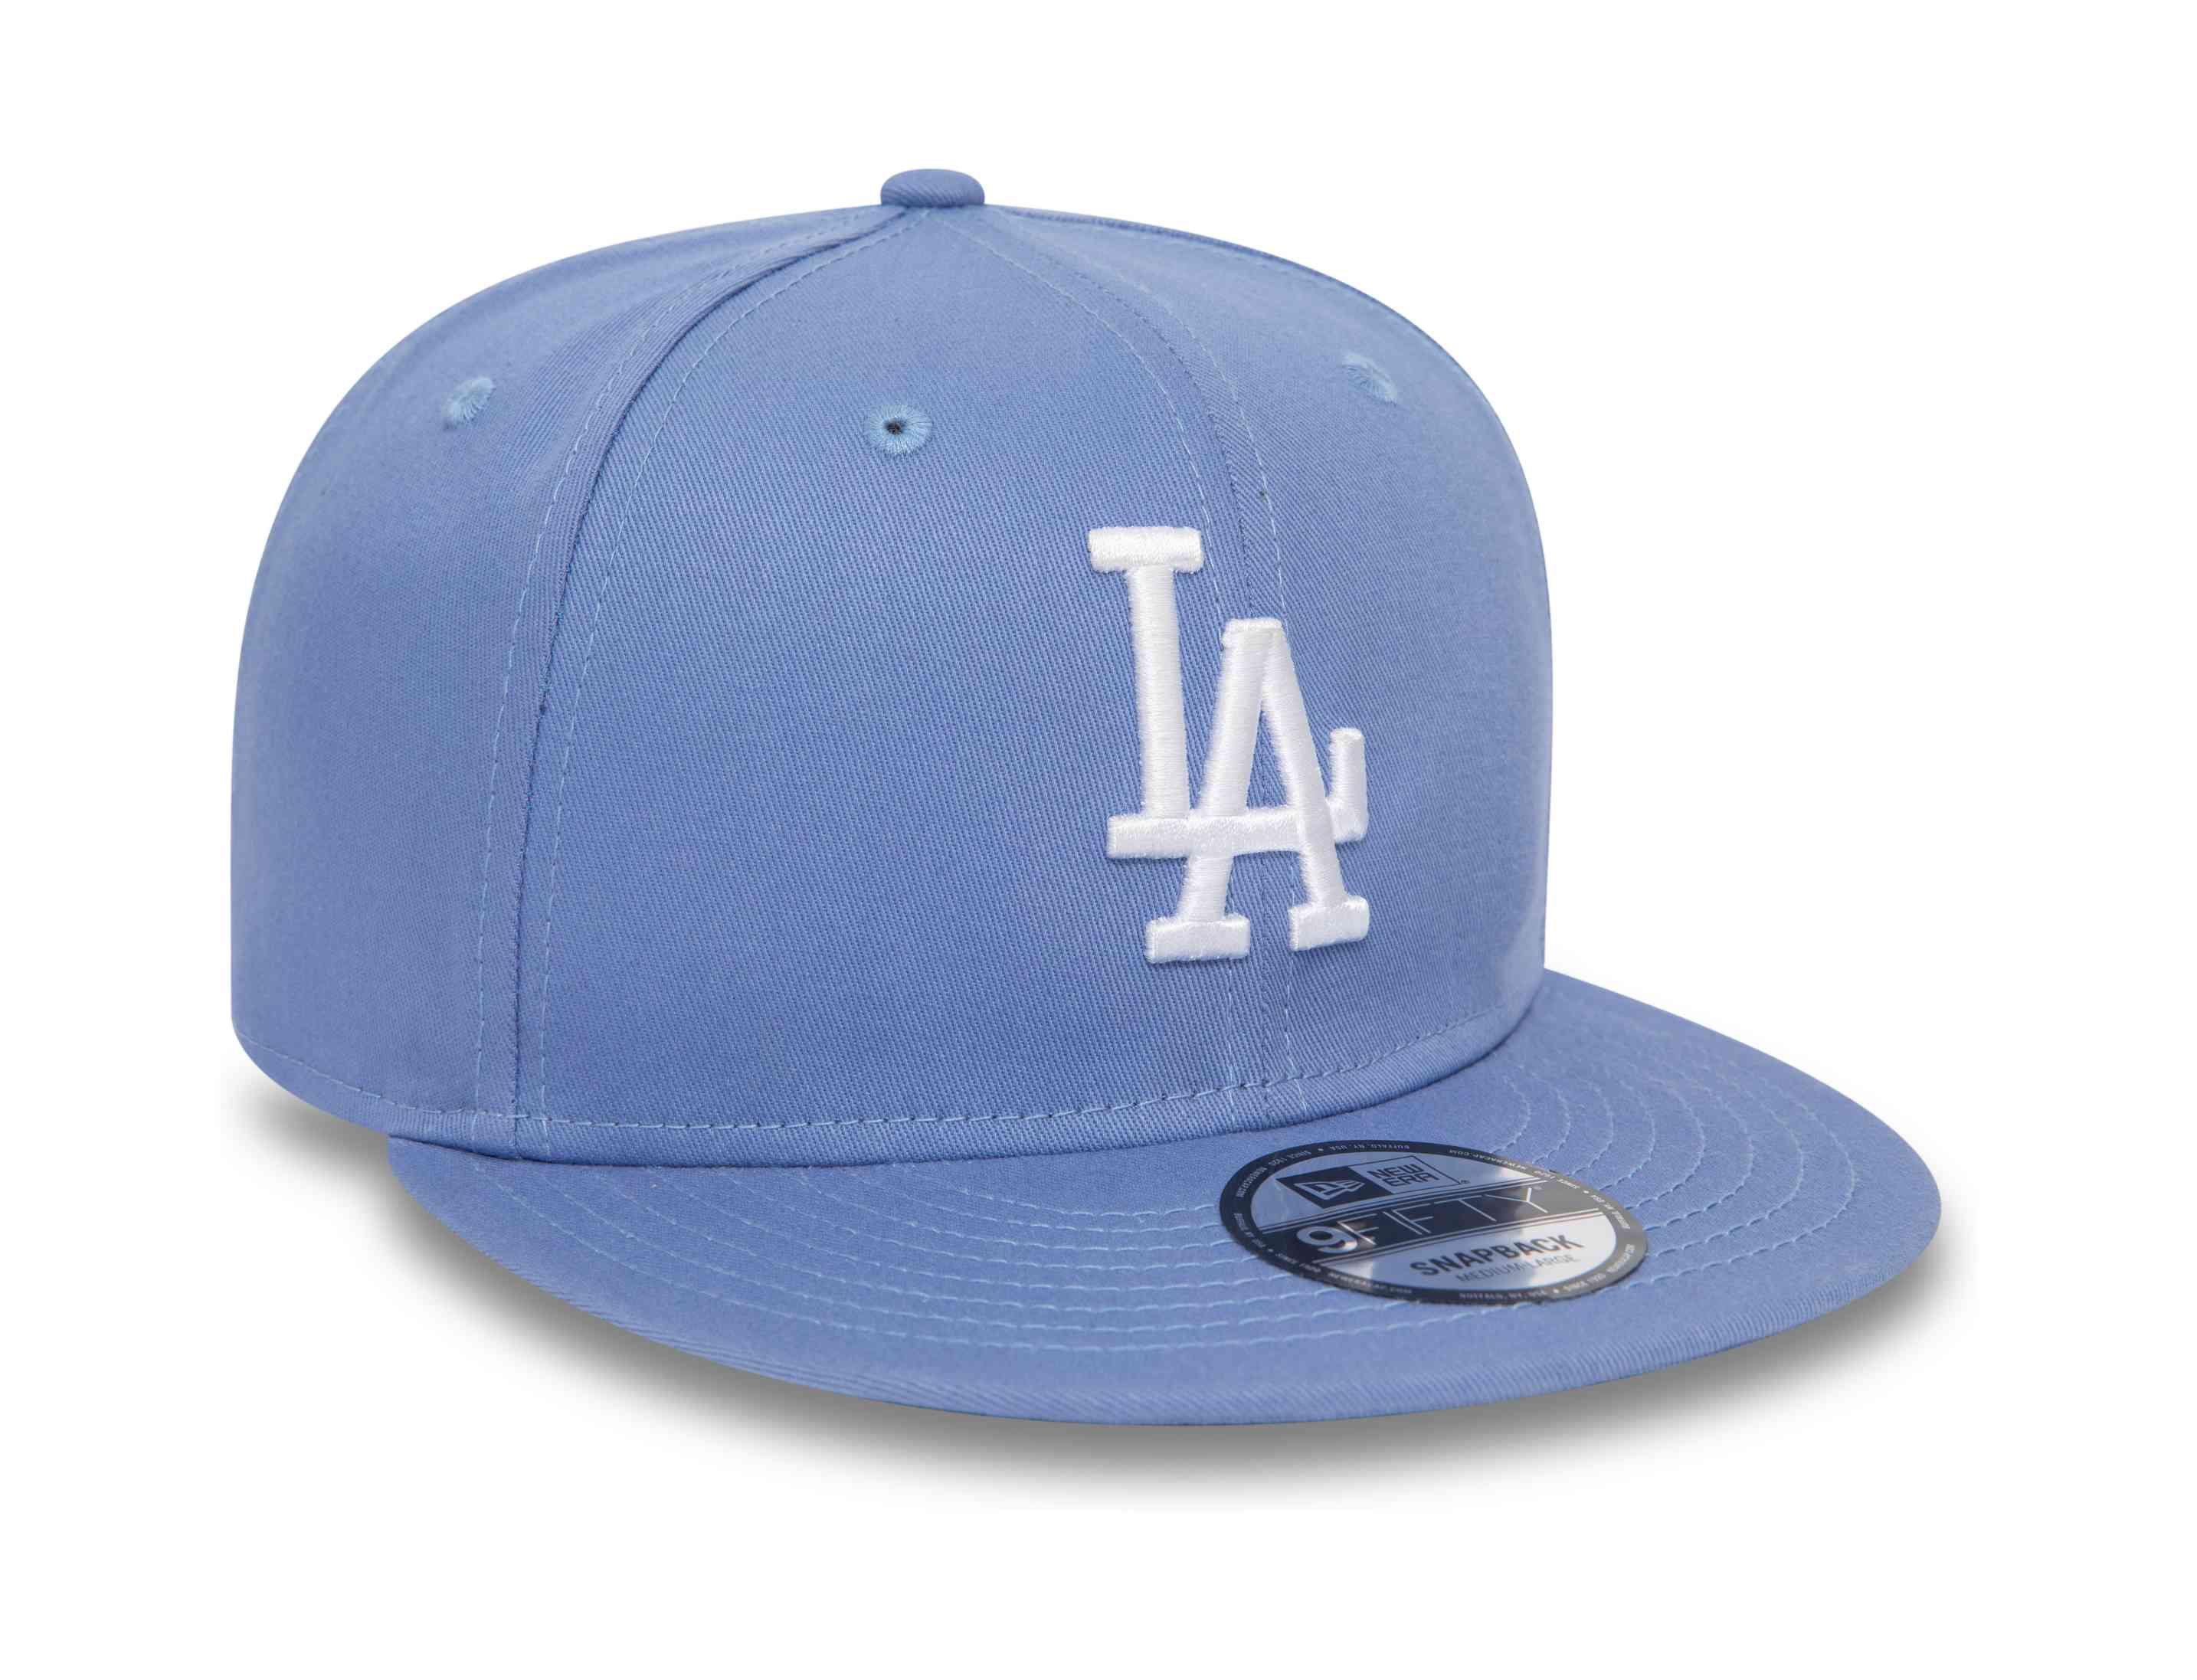 New Era - MLB Los Angeles Dodgers League Essential 9Fifty Snapback Cap